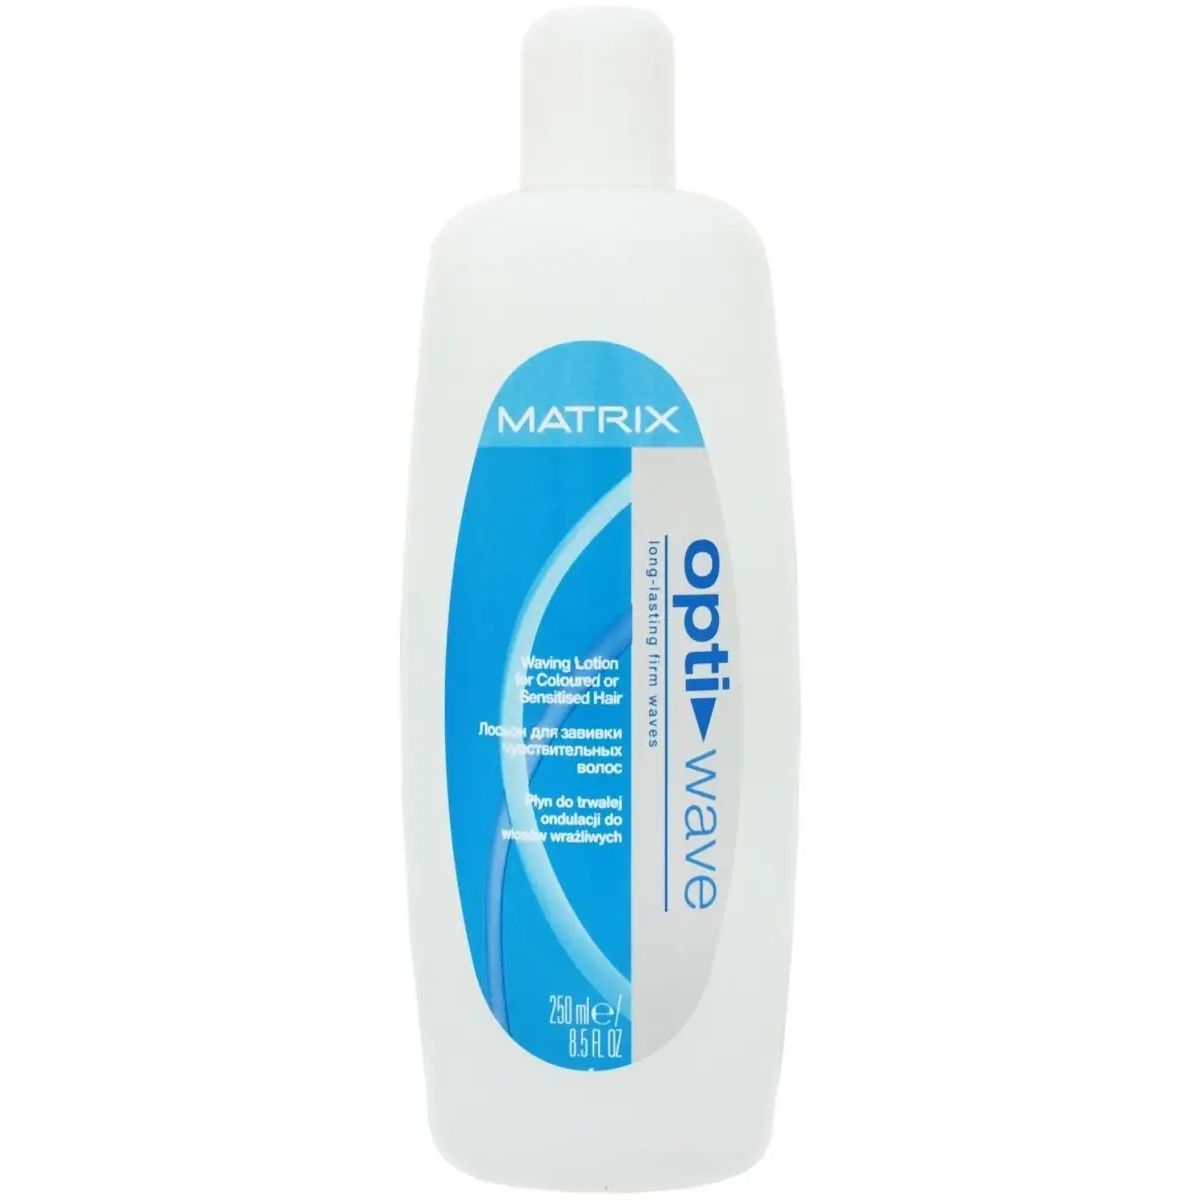 Лосьон для завивки Matrix Opti Wave чувствительных волос 3 х 250 мл matrix лосьон для завивки резистентных волос 3 х 250 мл